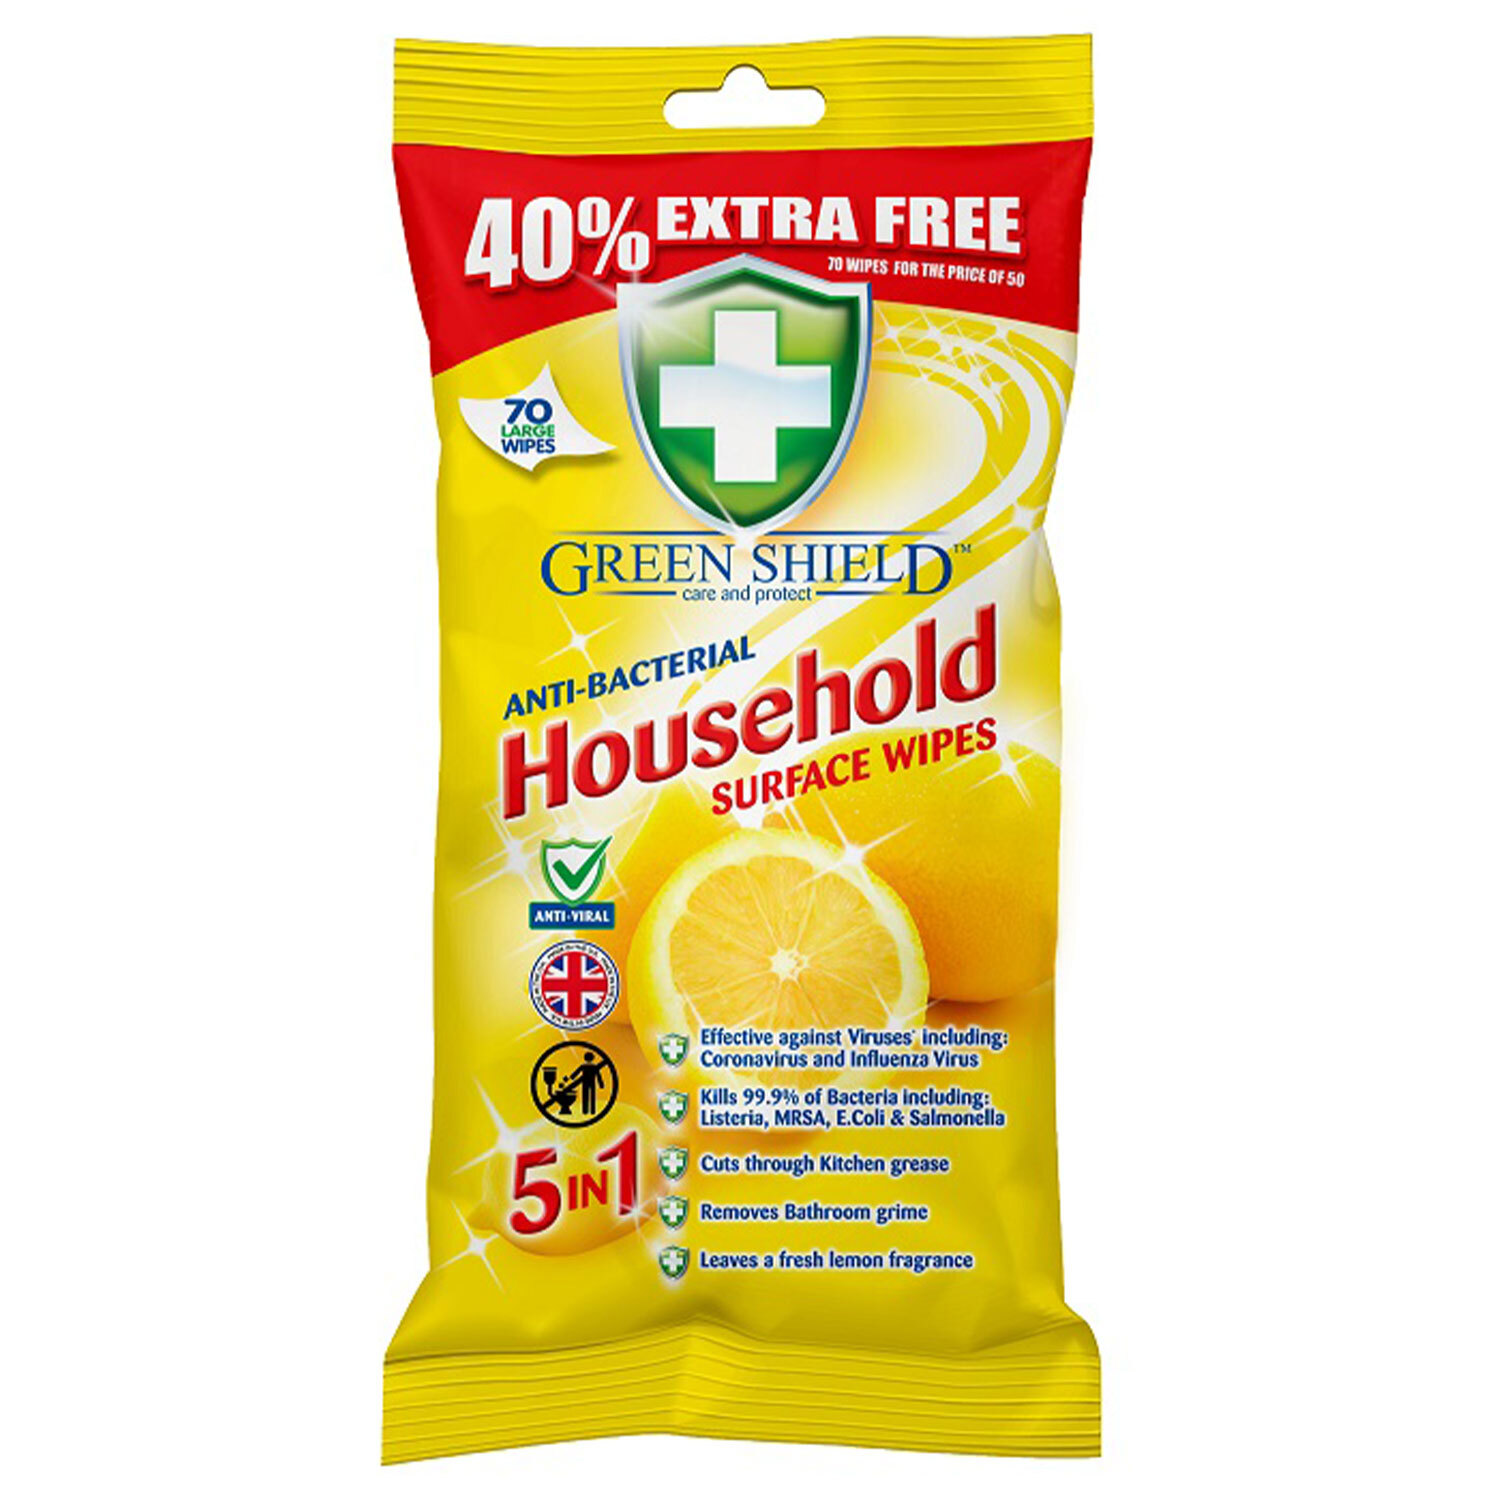 Greenshield Antibacterial Household Surface Wipe 70 Pack Image 1